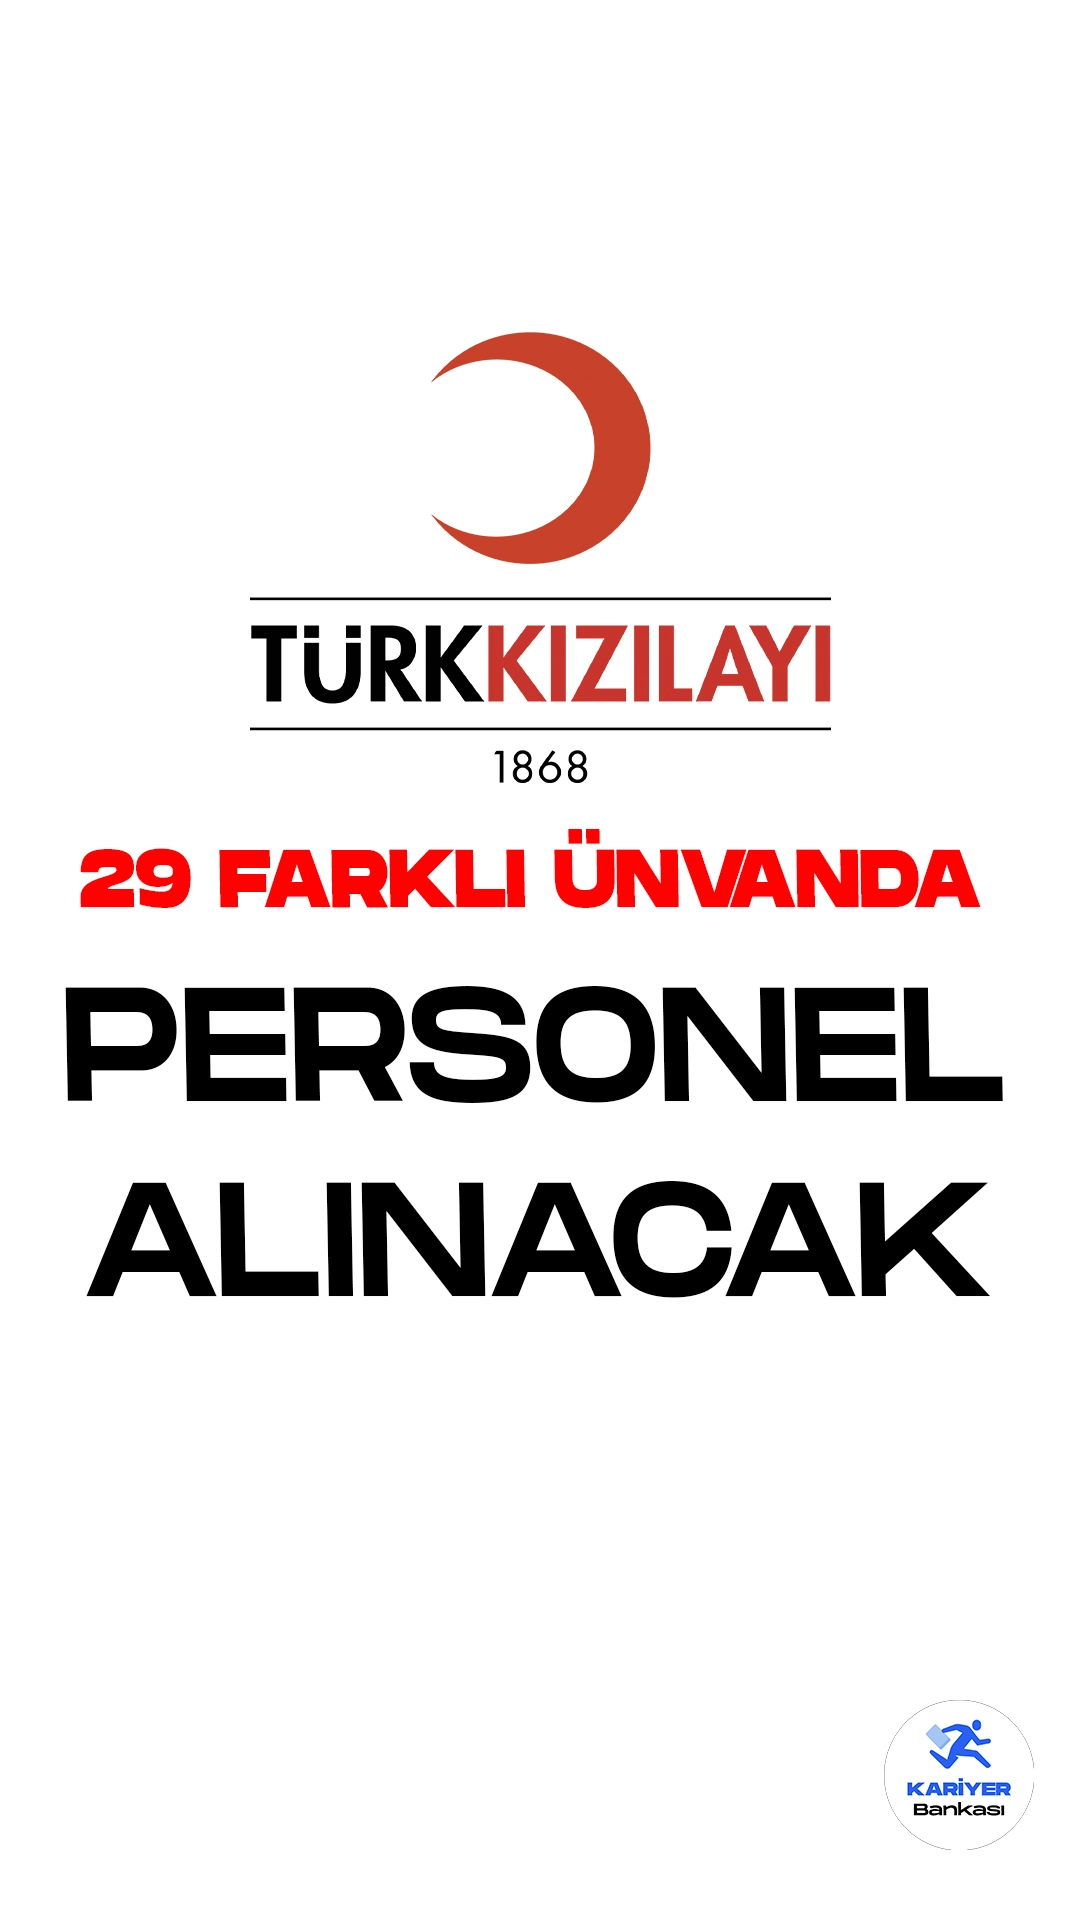 Kızılay 29 Farklı Unvanda Personel Alacak. Türk Kızılay'ı kariyer sayfası üzerinden yeni personel alımı duyuruları yayımlandı. İlgili alım duyurularına göre, Kızılay'a bilgi yönetimi yöneticisi, iş geliştirme asistanı, ürün tasarım ve analiz uzmanı, uluslararası ilişkiler uzmanı ve toplamda 29 farklı ünvanda olmak üzere personel alımları yapılacak.Başvuru yapacak adayların şartları dikkatle incelemesi gerekmektedir.Başvuruları devam eden aktif personel alımlarına dair ünvan dağılımı aşağıdaki gibidir.